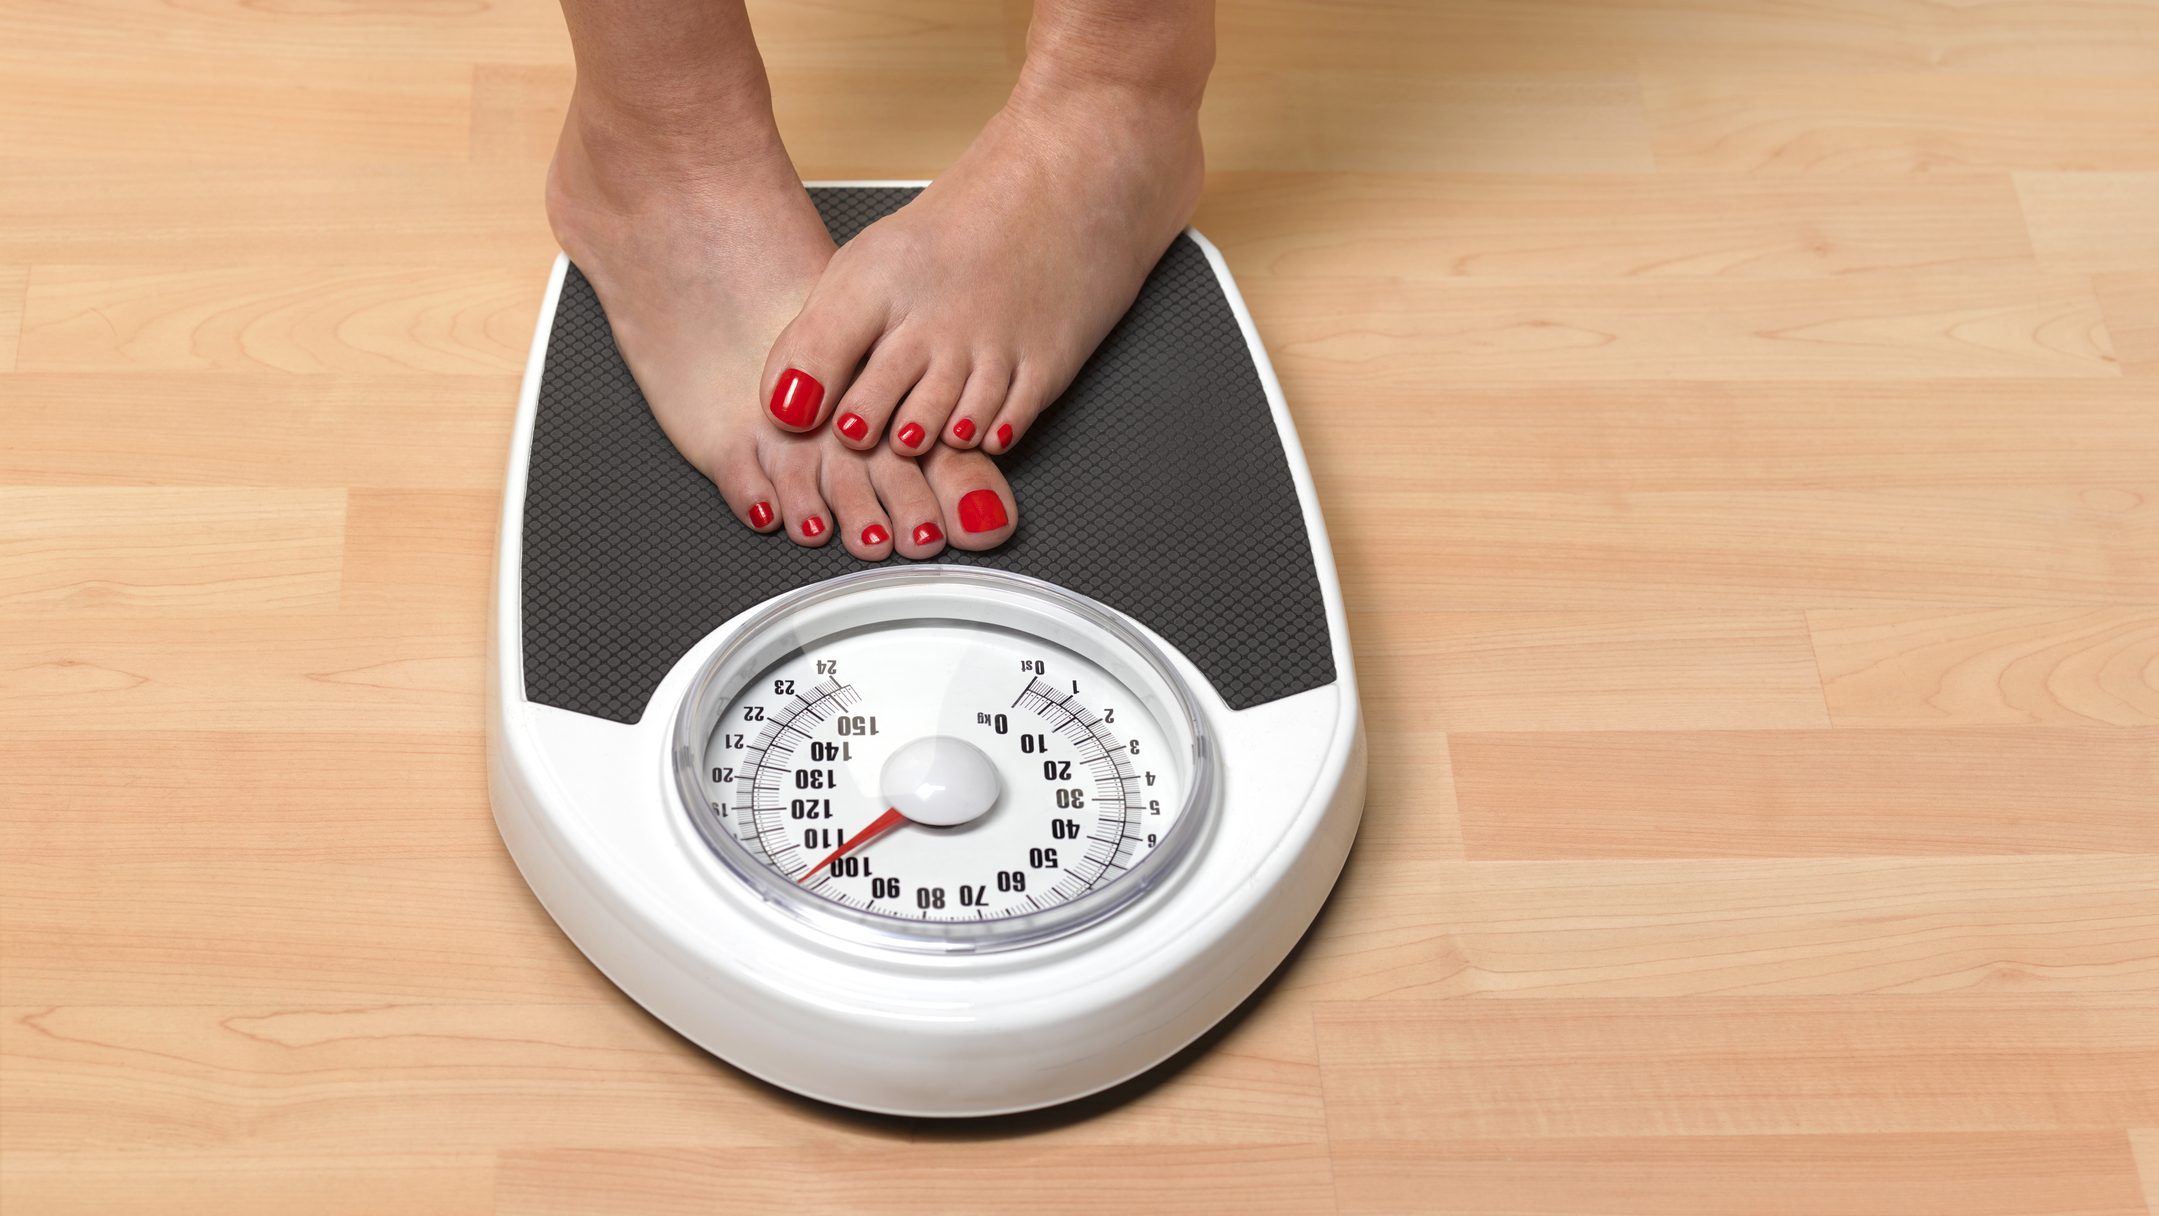 Ponerte a dieta puede hacerte engordar más: estas son las razones – Cadena Dial